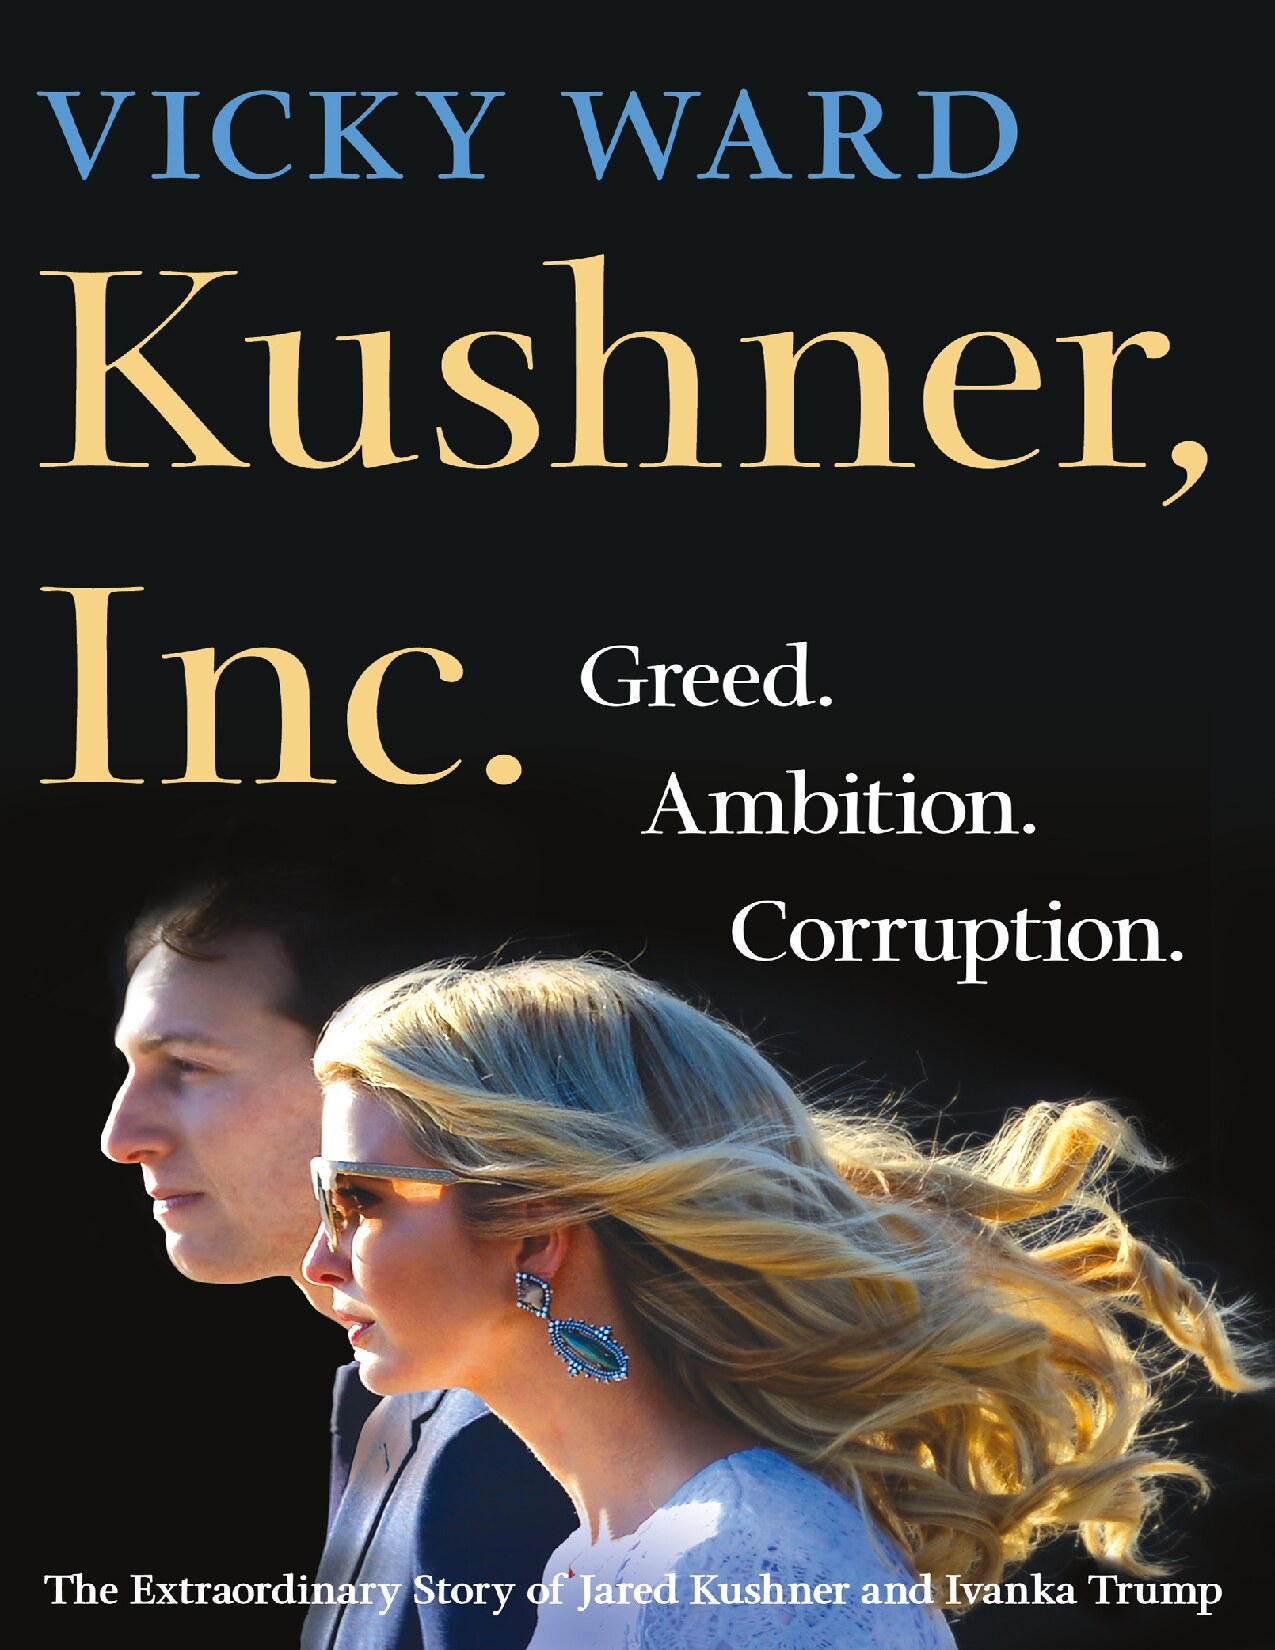 Kushner, Inc. : Greed. Ambition. Corruption. the Extraordinary Story of Jared Kushner and Ivanka Trump (9781250185952)